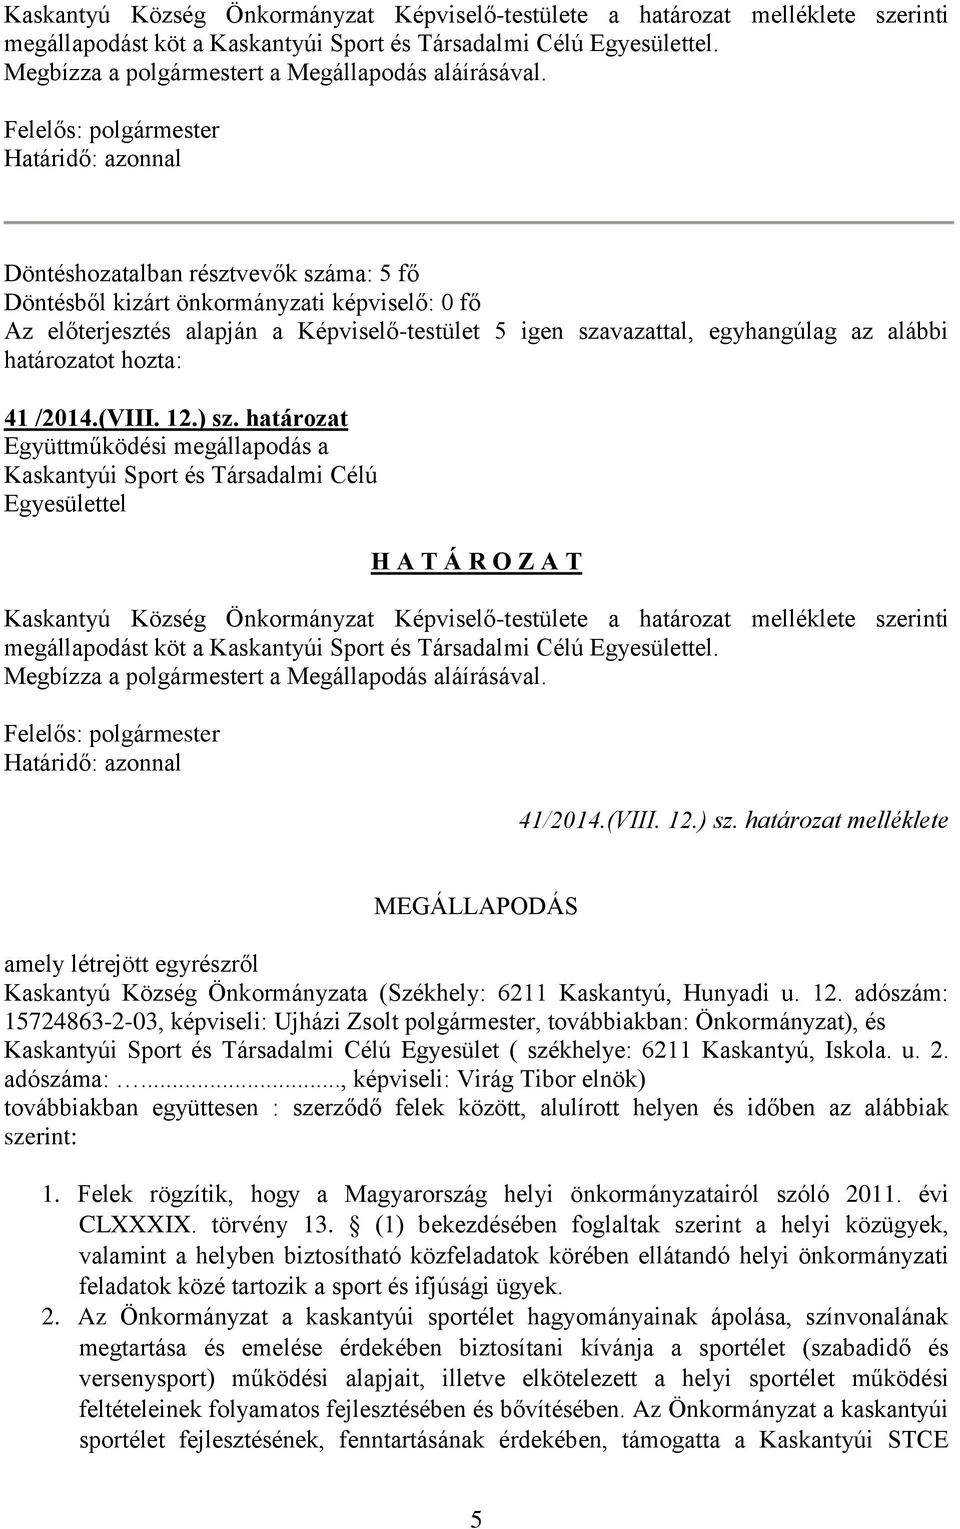 /2014.(VIII. 12.) sz. határozat Együttműködési megállapodás a Kaskantyúi Sport és Társadalmi Célú H A T Á R O Z A T  41/2014.(VIII. 12.) sz. határozat melléklete MEGÁLLAPODÁS amely létrejött egyrészről Kaskantyú Község Önkormányzata (Székhely: 6211 Kaskantyú, Hunyadi u.